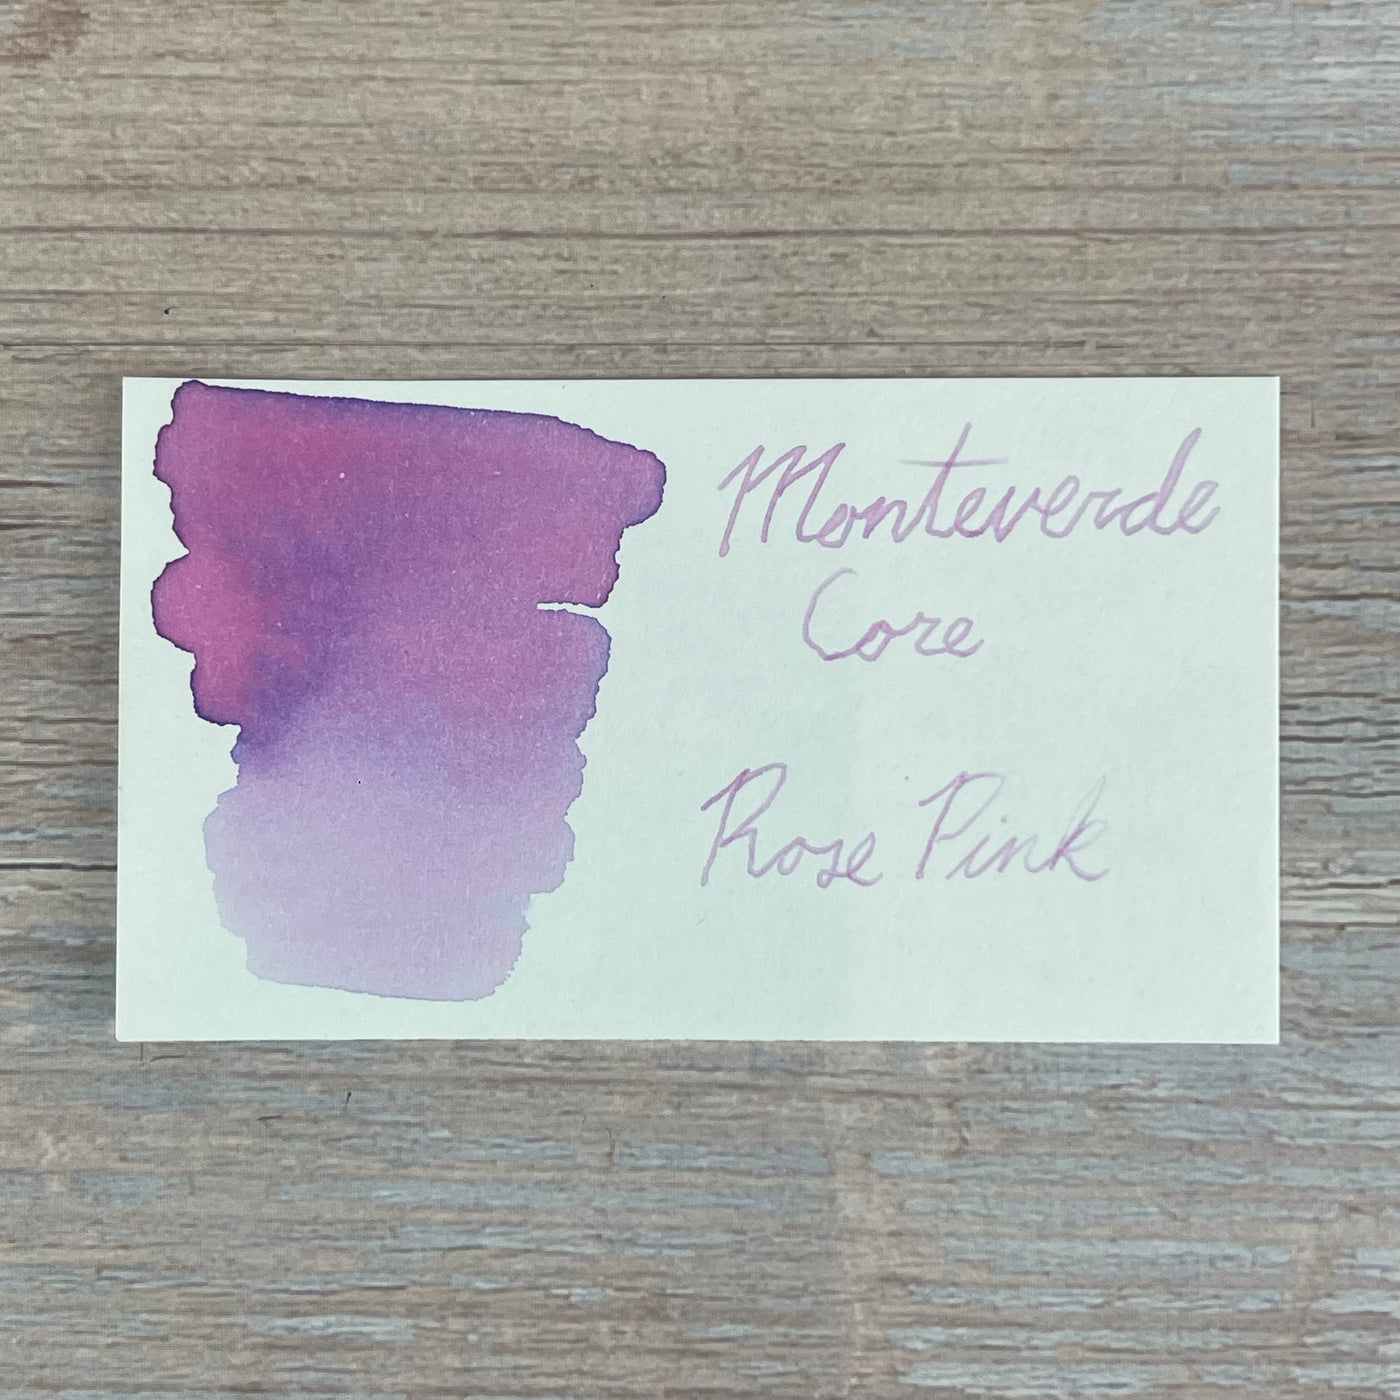 Monteverde Rose Pink - 30ml Bottled Ink